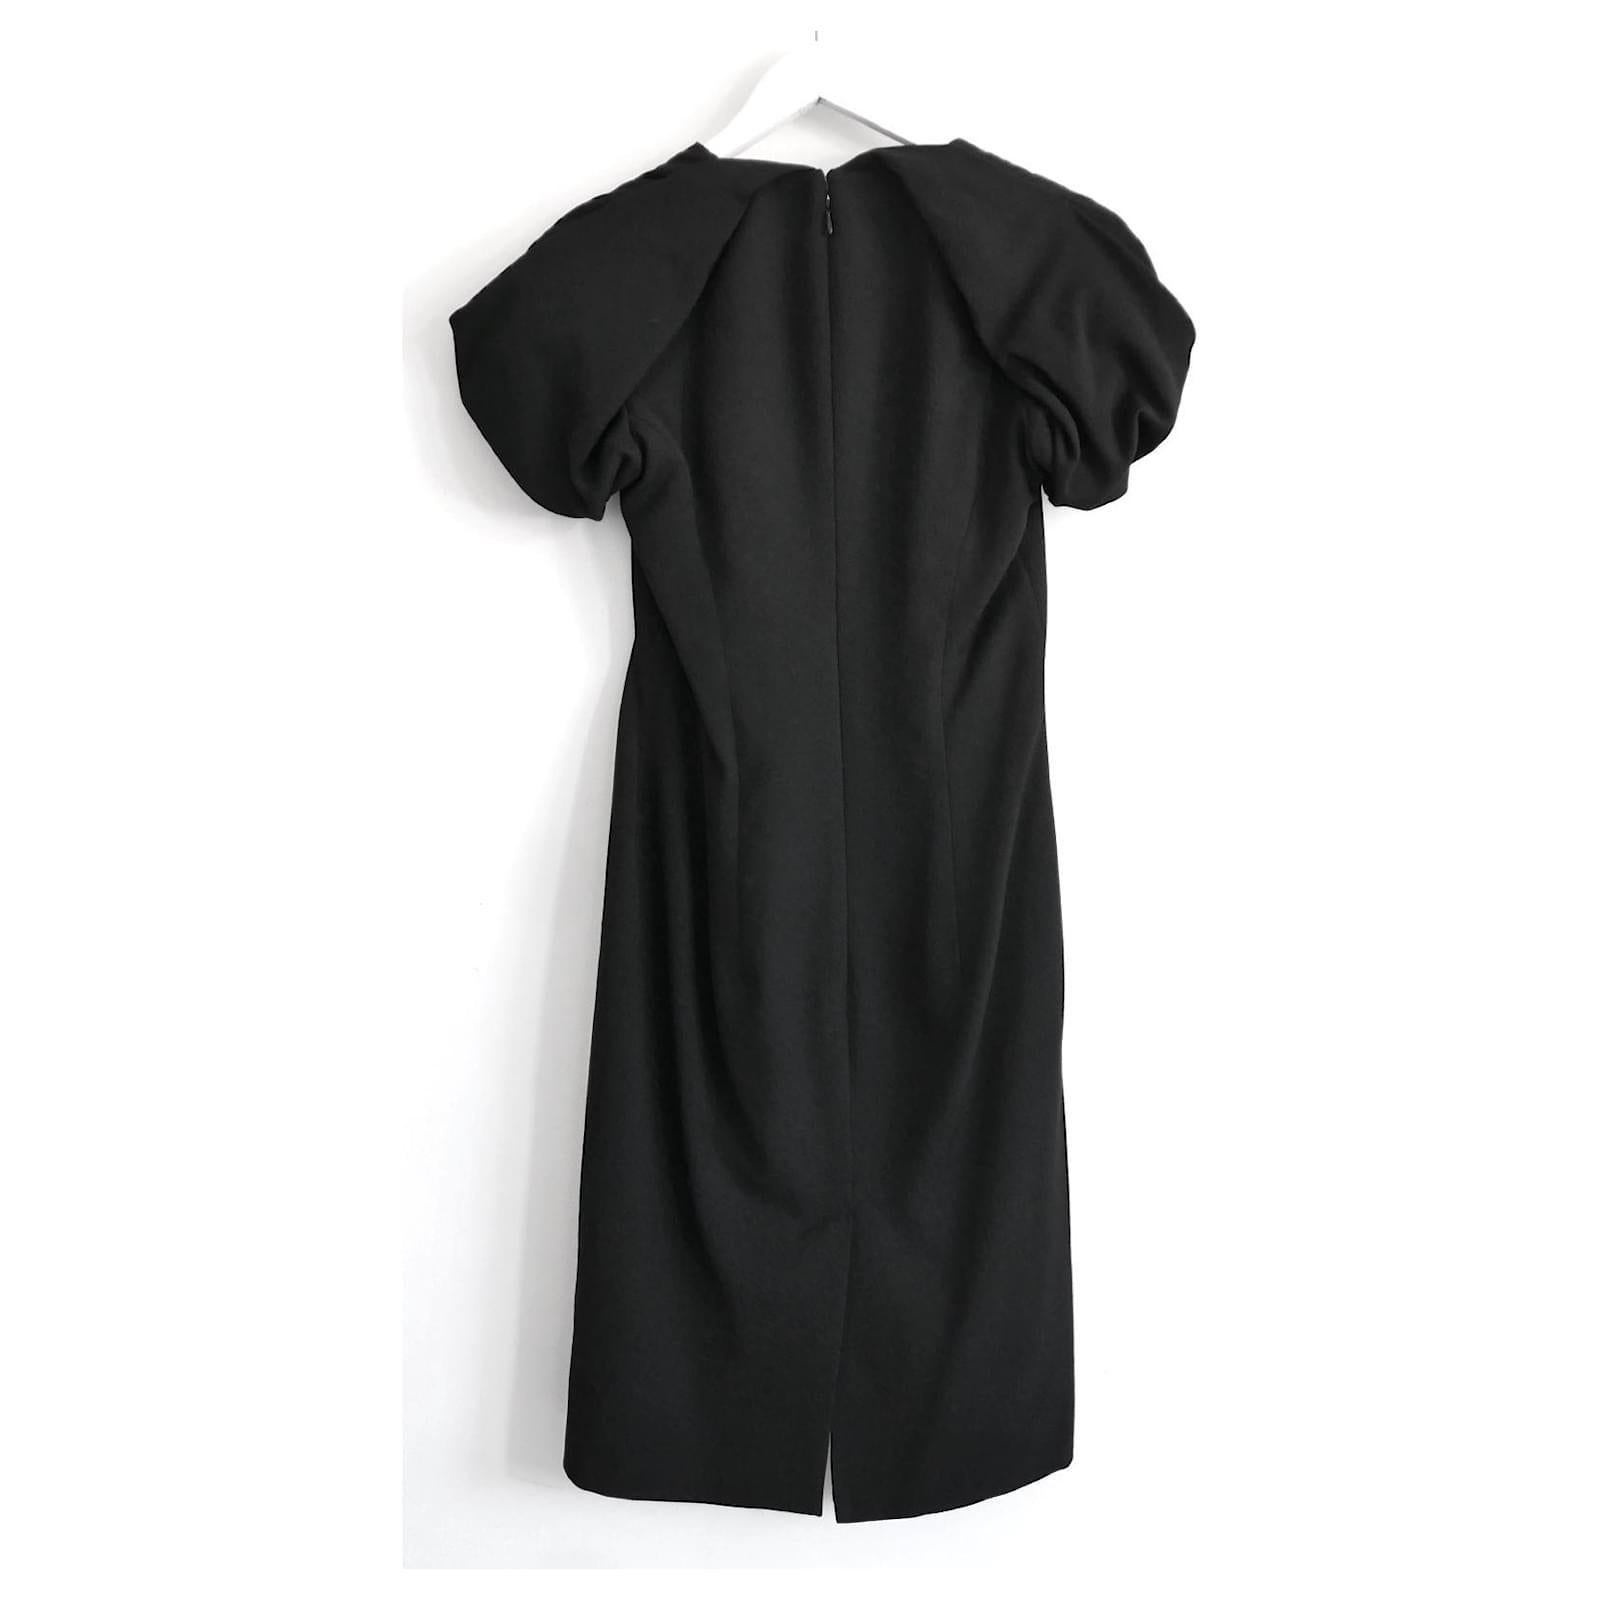 Women's Alexander McQueen Puff Sleeve Black Dress